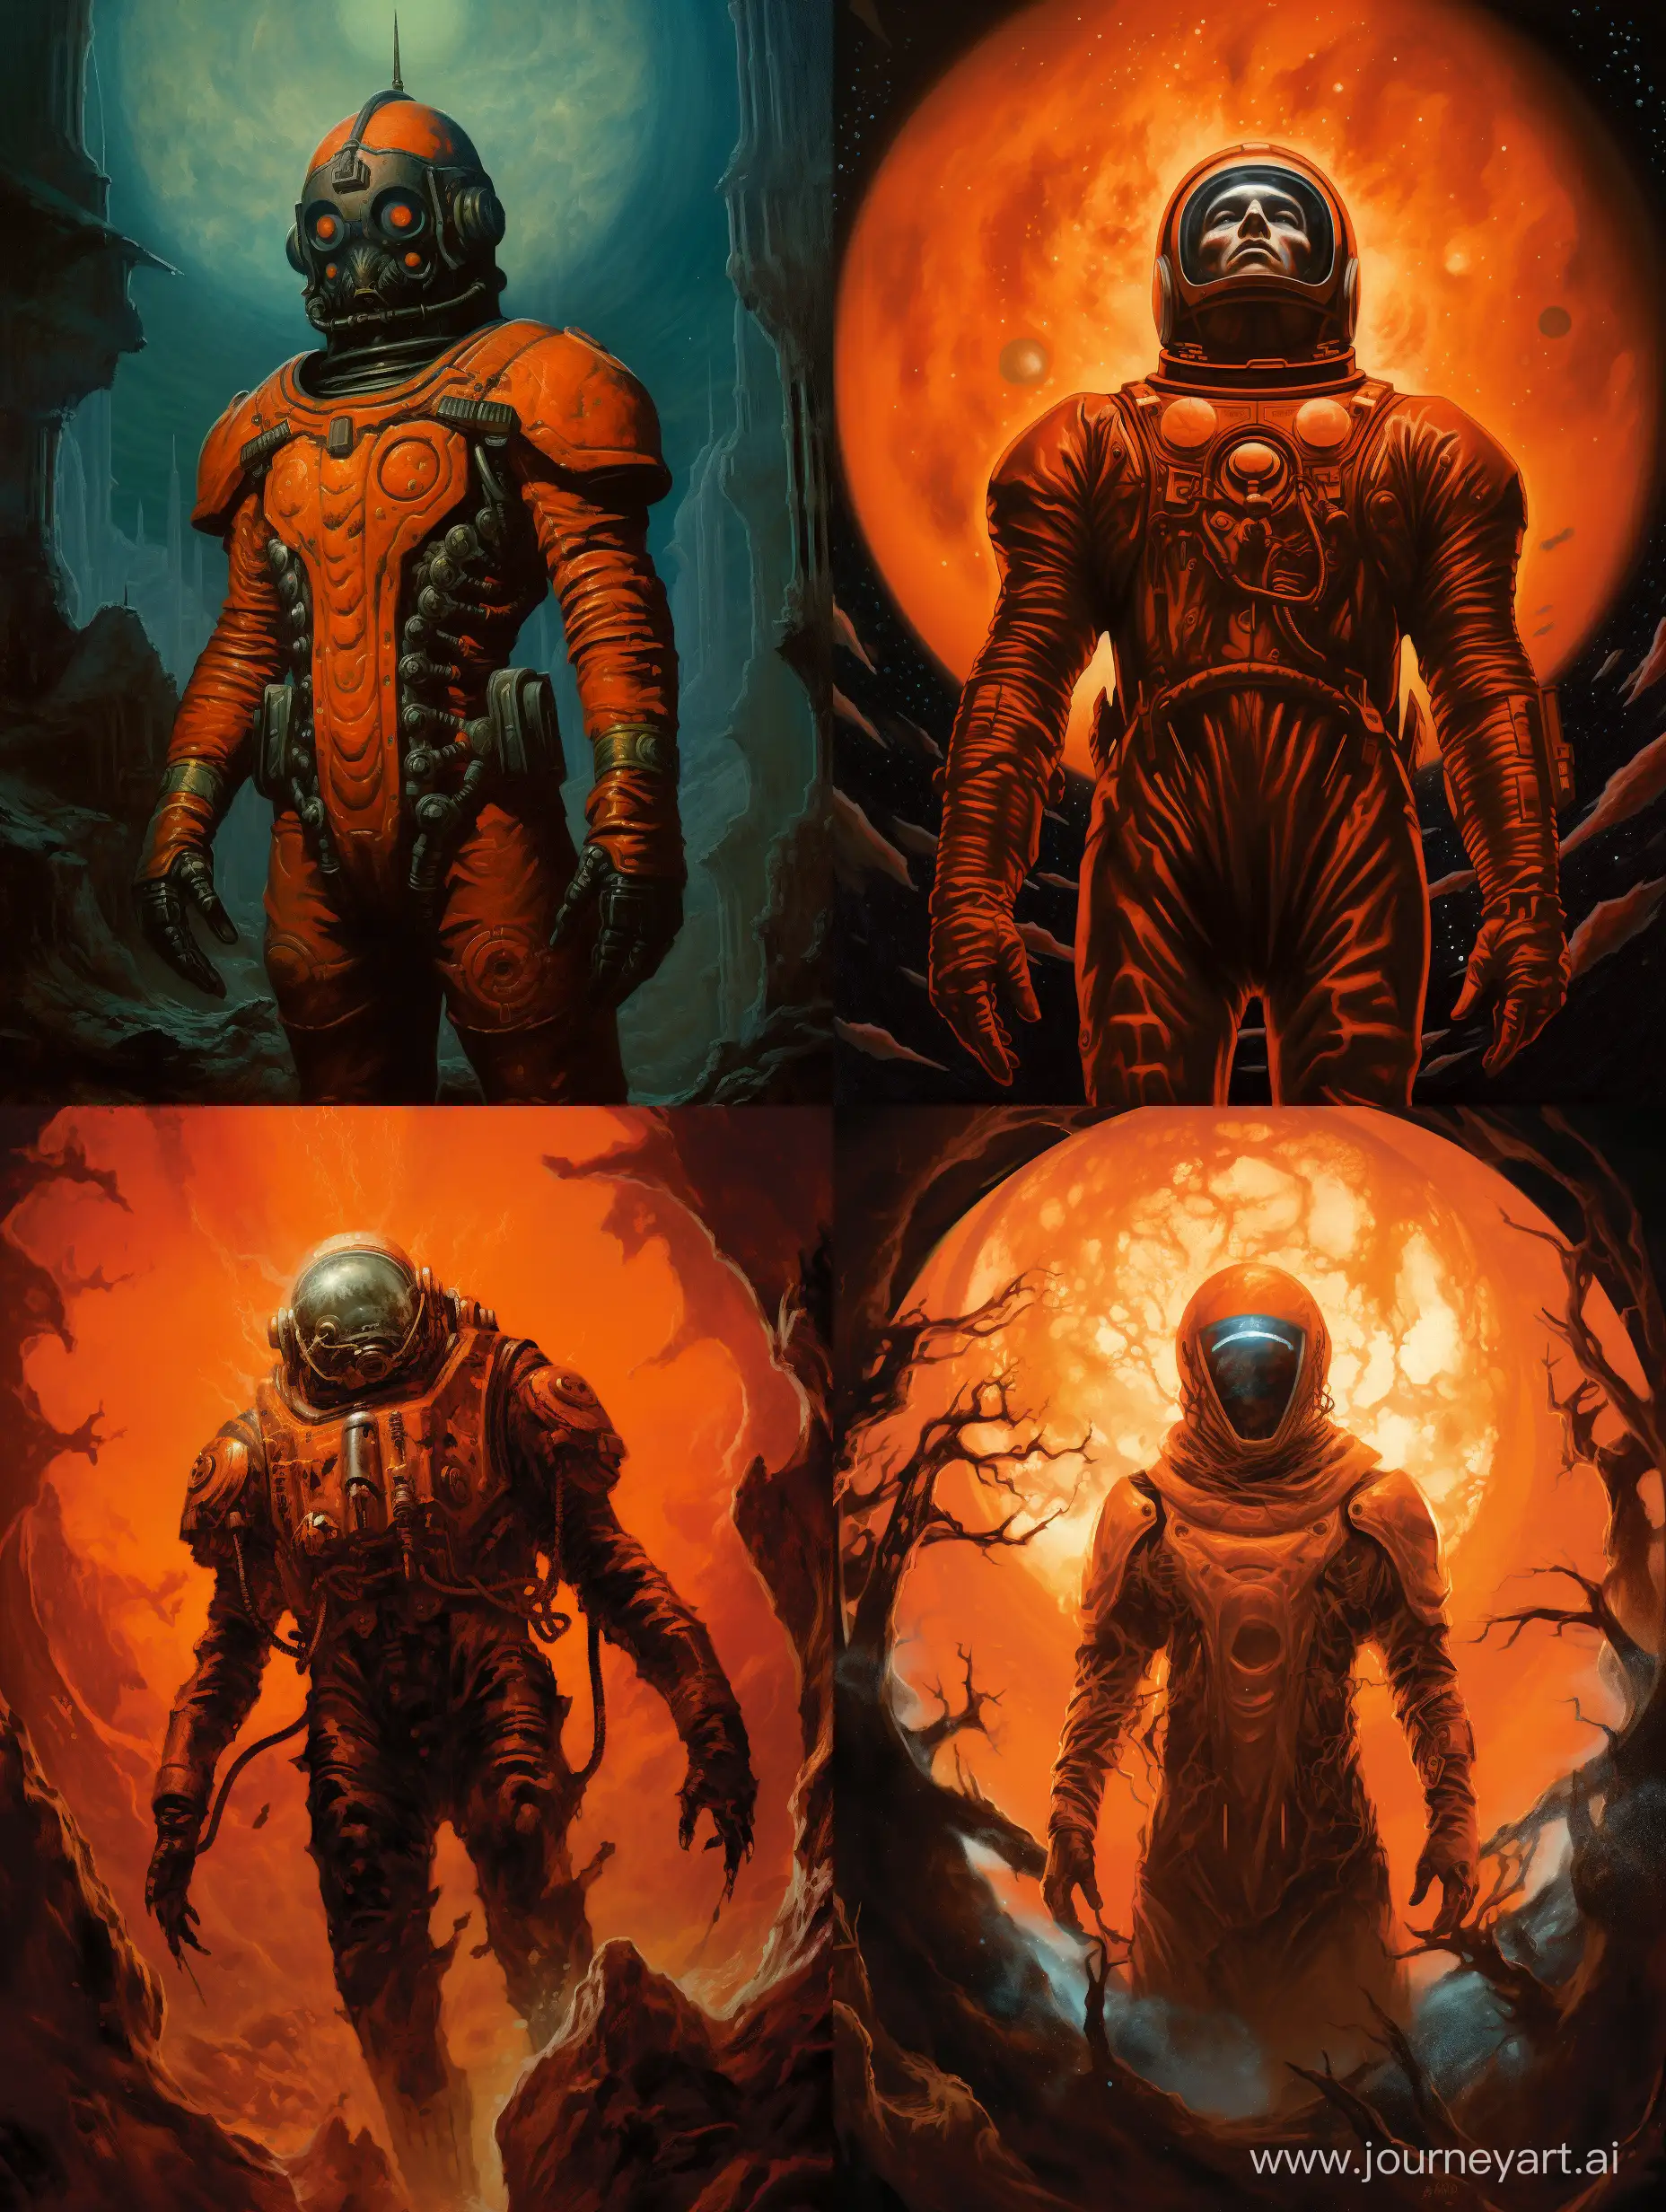 Vintage-Dark-Fantasy-Illustration-Astronaut-in-Orange-Retro-Space-Suit